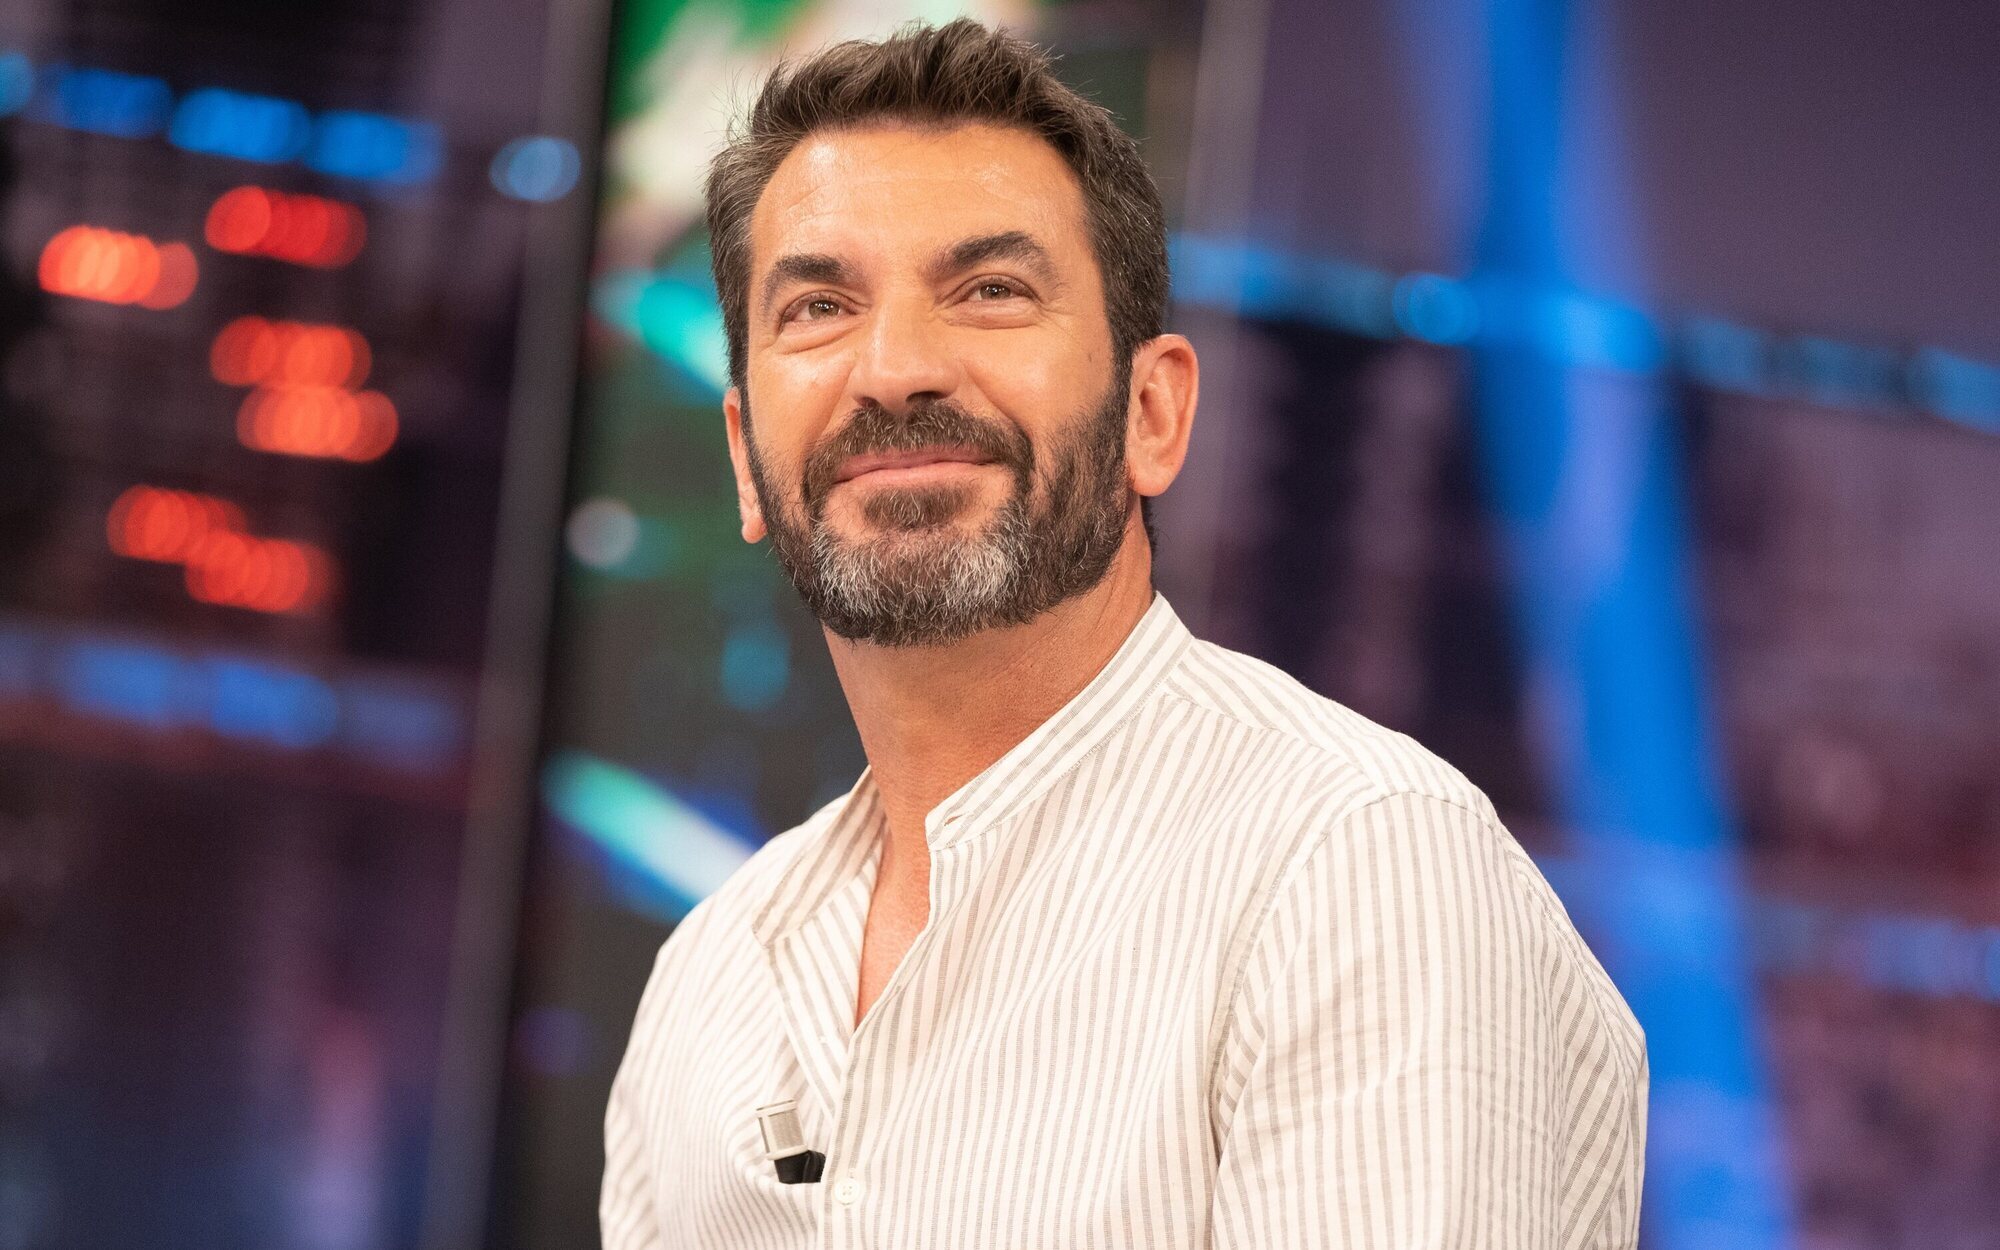 Arturo Valls rechazó la oferta de Mediaset para presentar 'Me resbala': "Ya había pasado página"